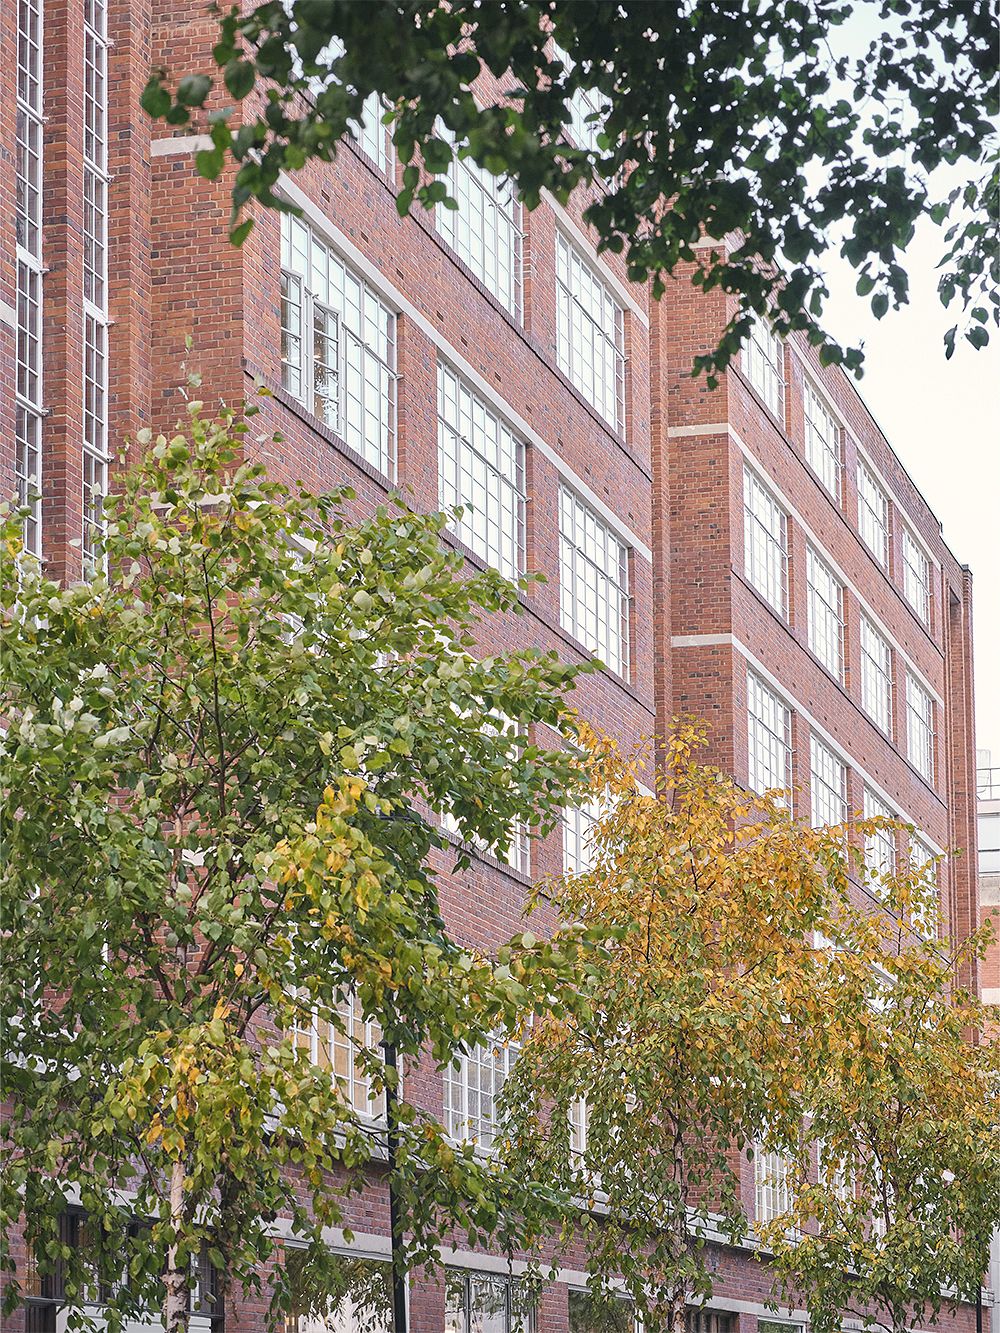 An image of Douglas House's red brick façade.